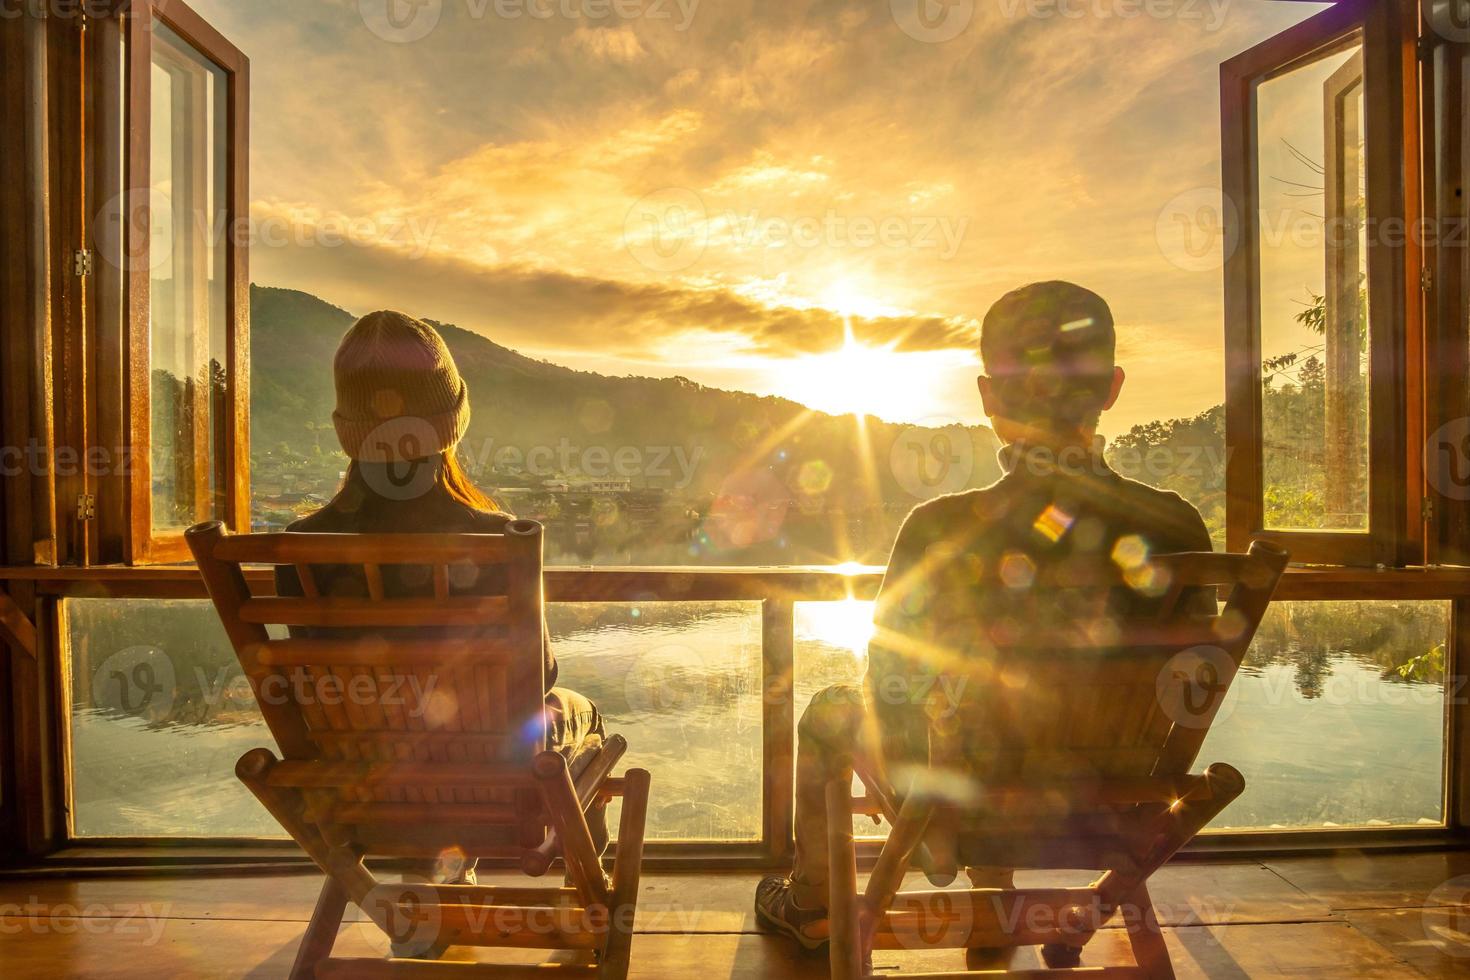 gelukkig jong stel kijken naar uitzicht op het meer bij coffeeshop in de ochtendzonsopgang, verbod rak thai village, mae hong son provincie, thailand. reizen, samen en romantisch concept foto